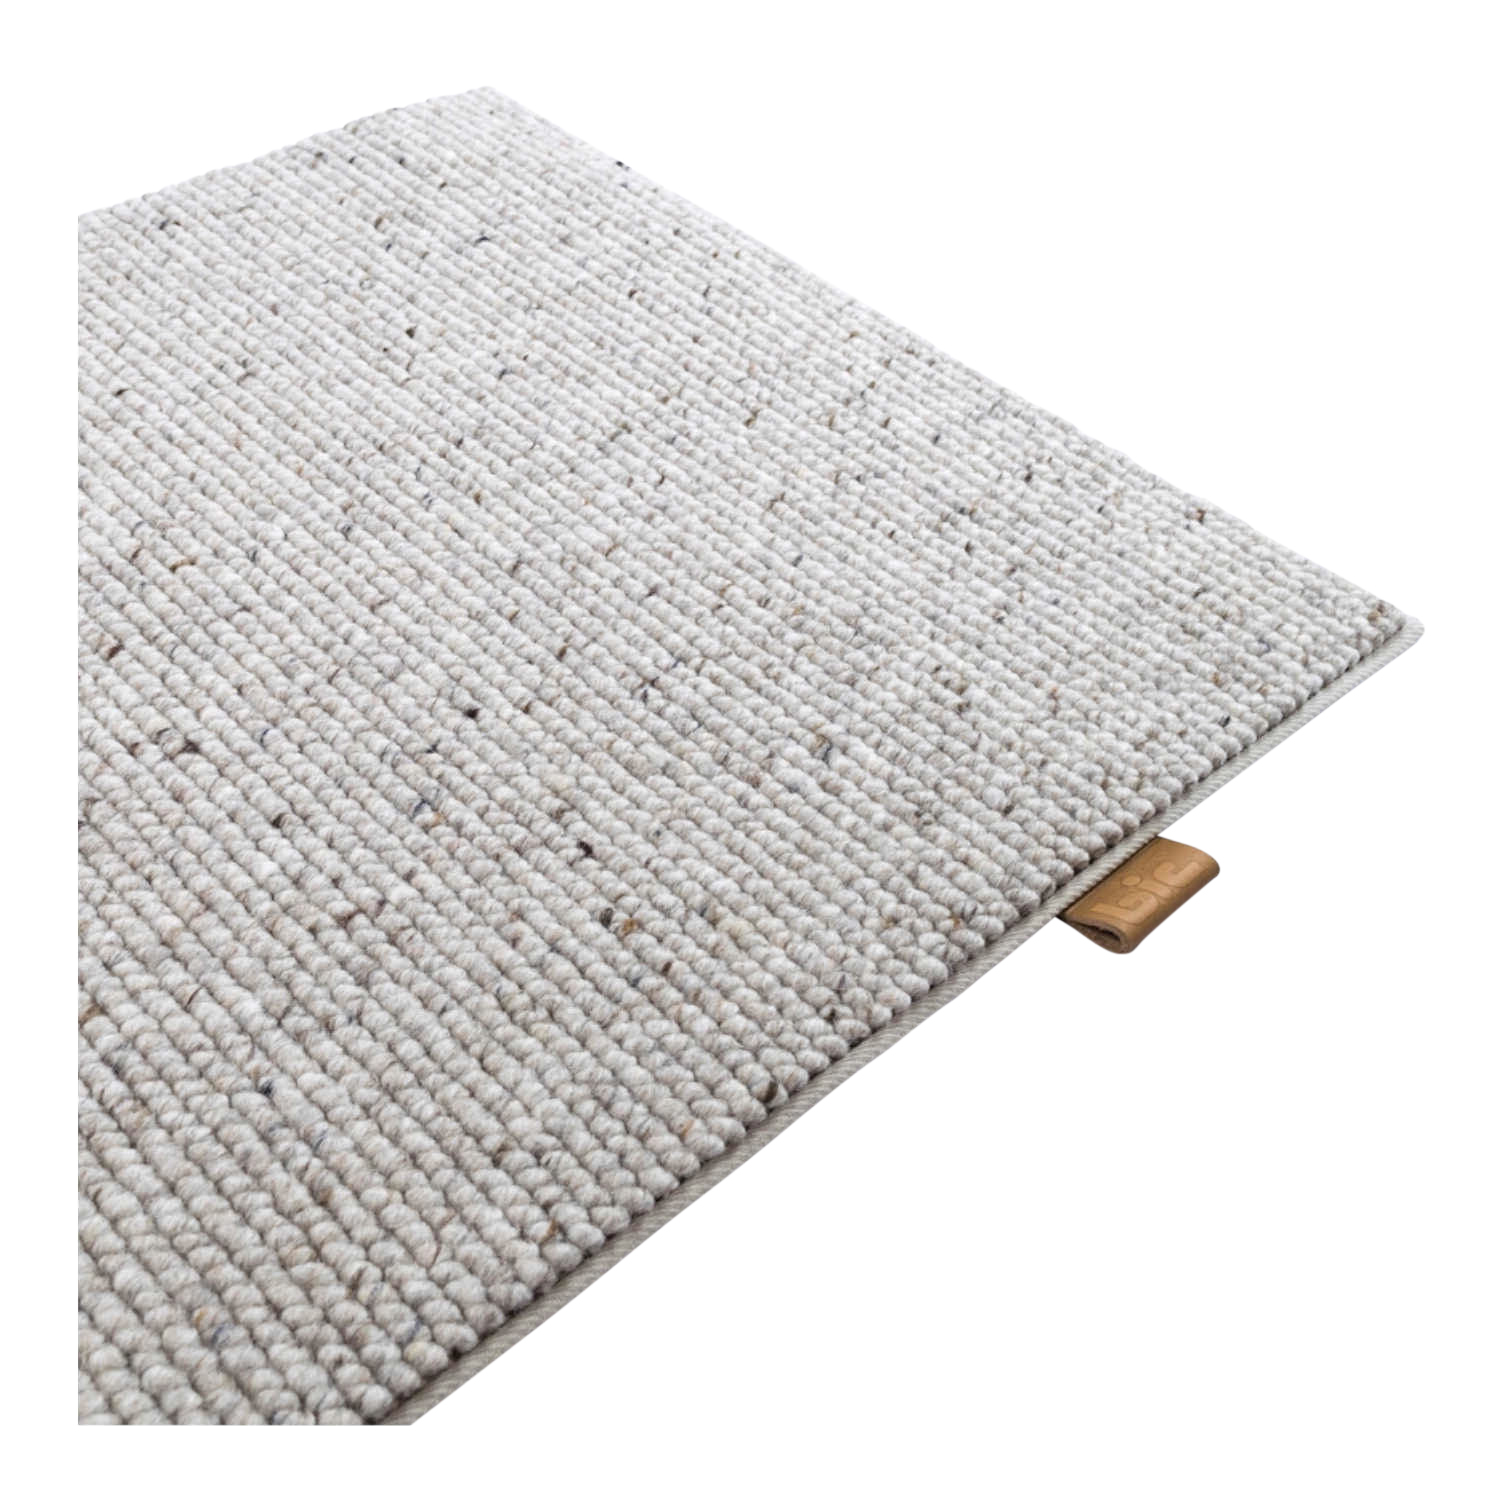 Atrar Teppich, Farbe 5207 sandybrown, Grösse 170 x 240cm von B.I.C Carpets